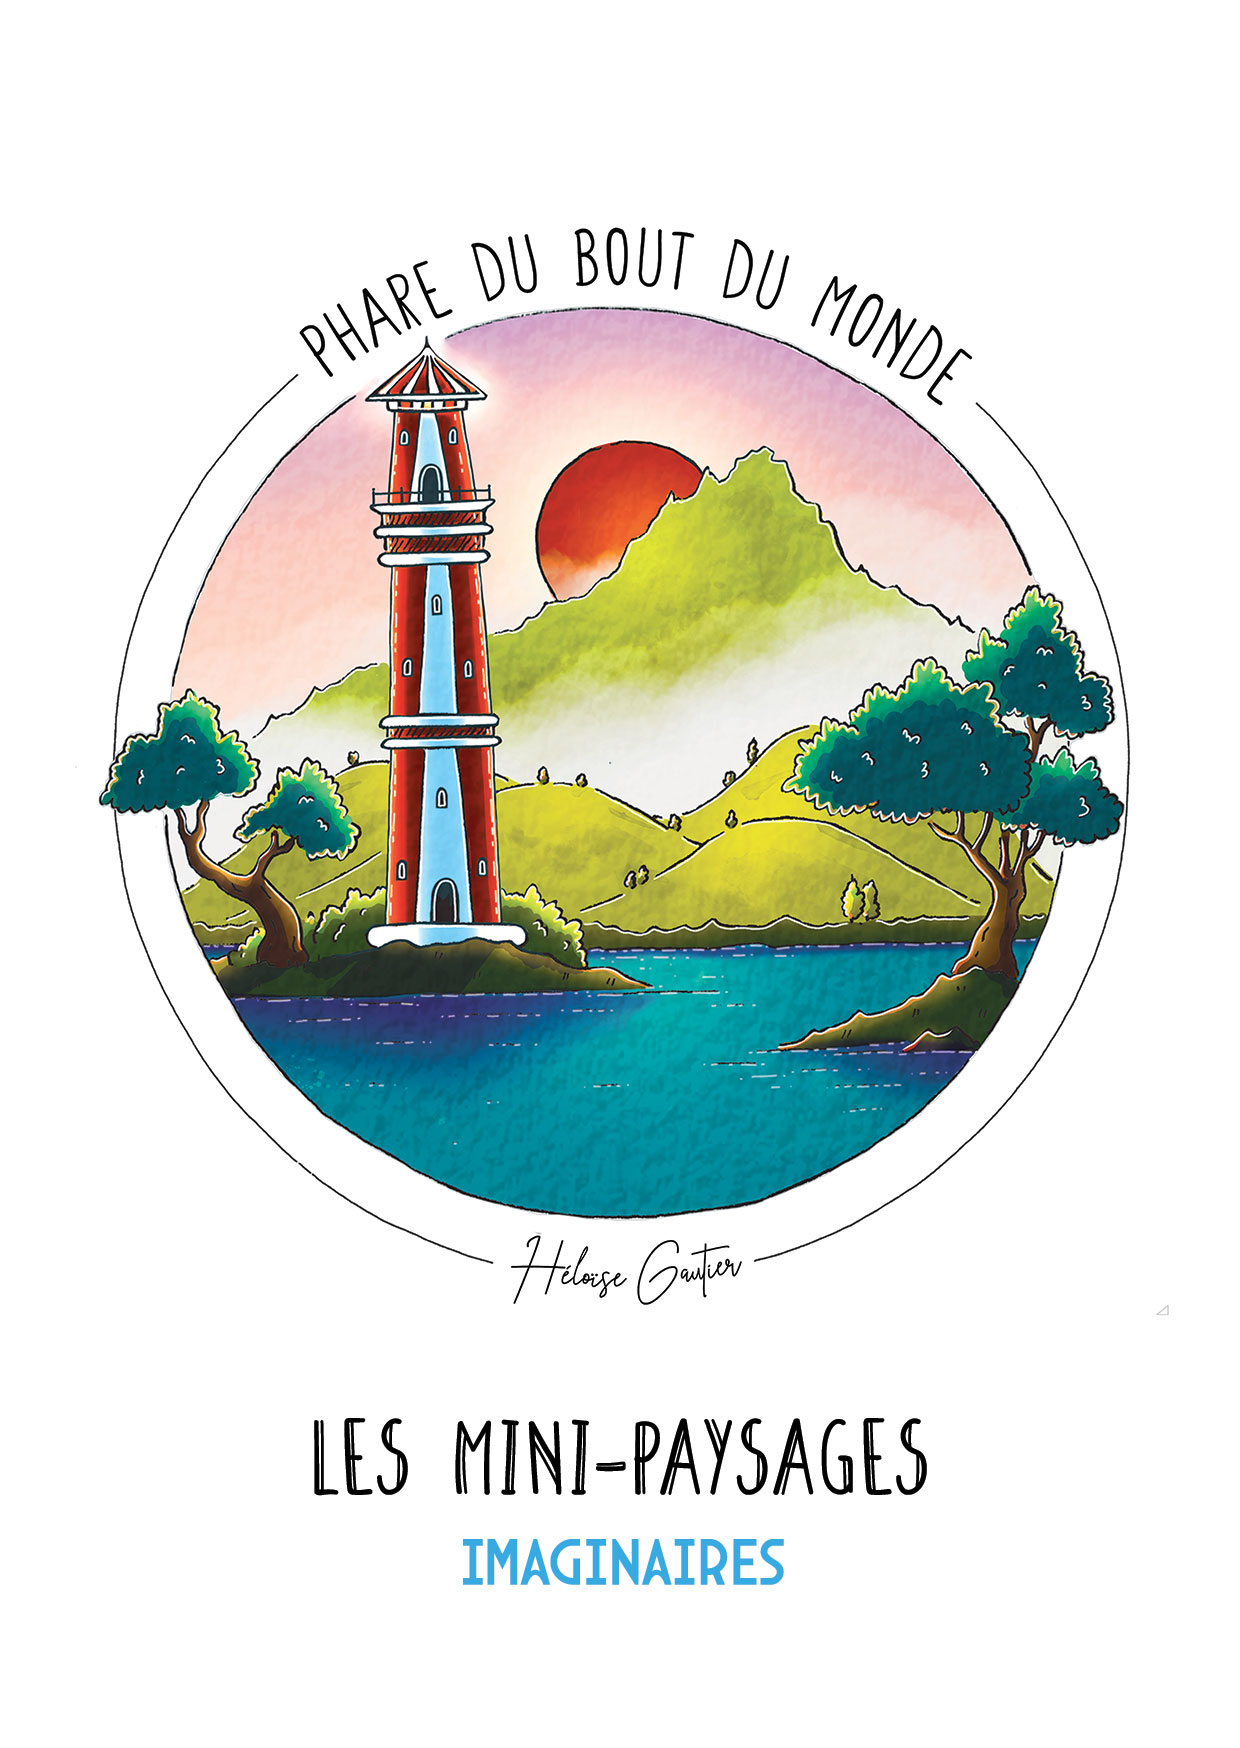 Illustration Mini-paysages imaginaires | Phare du bout du monde | Héloïse Gautier